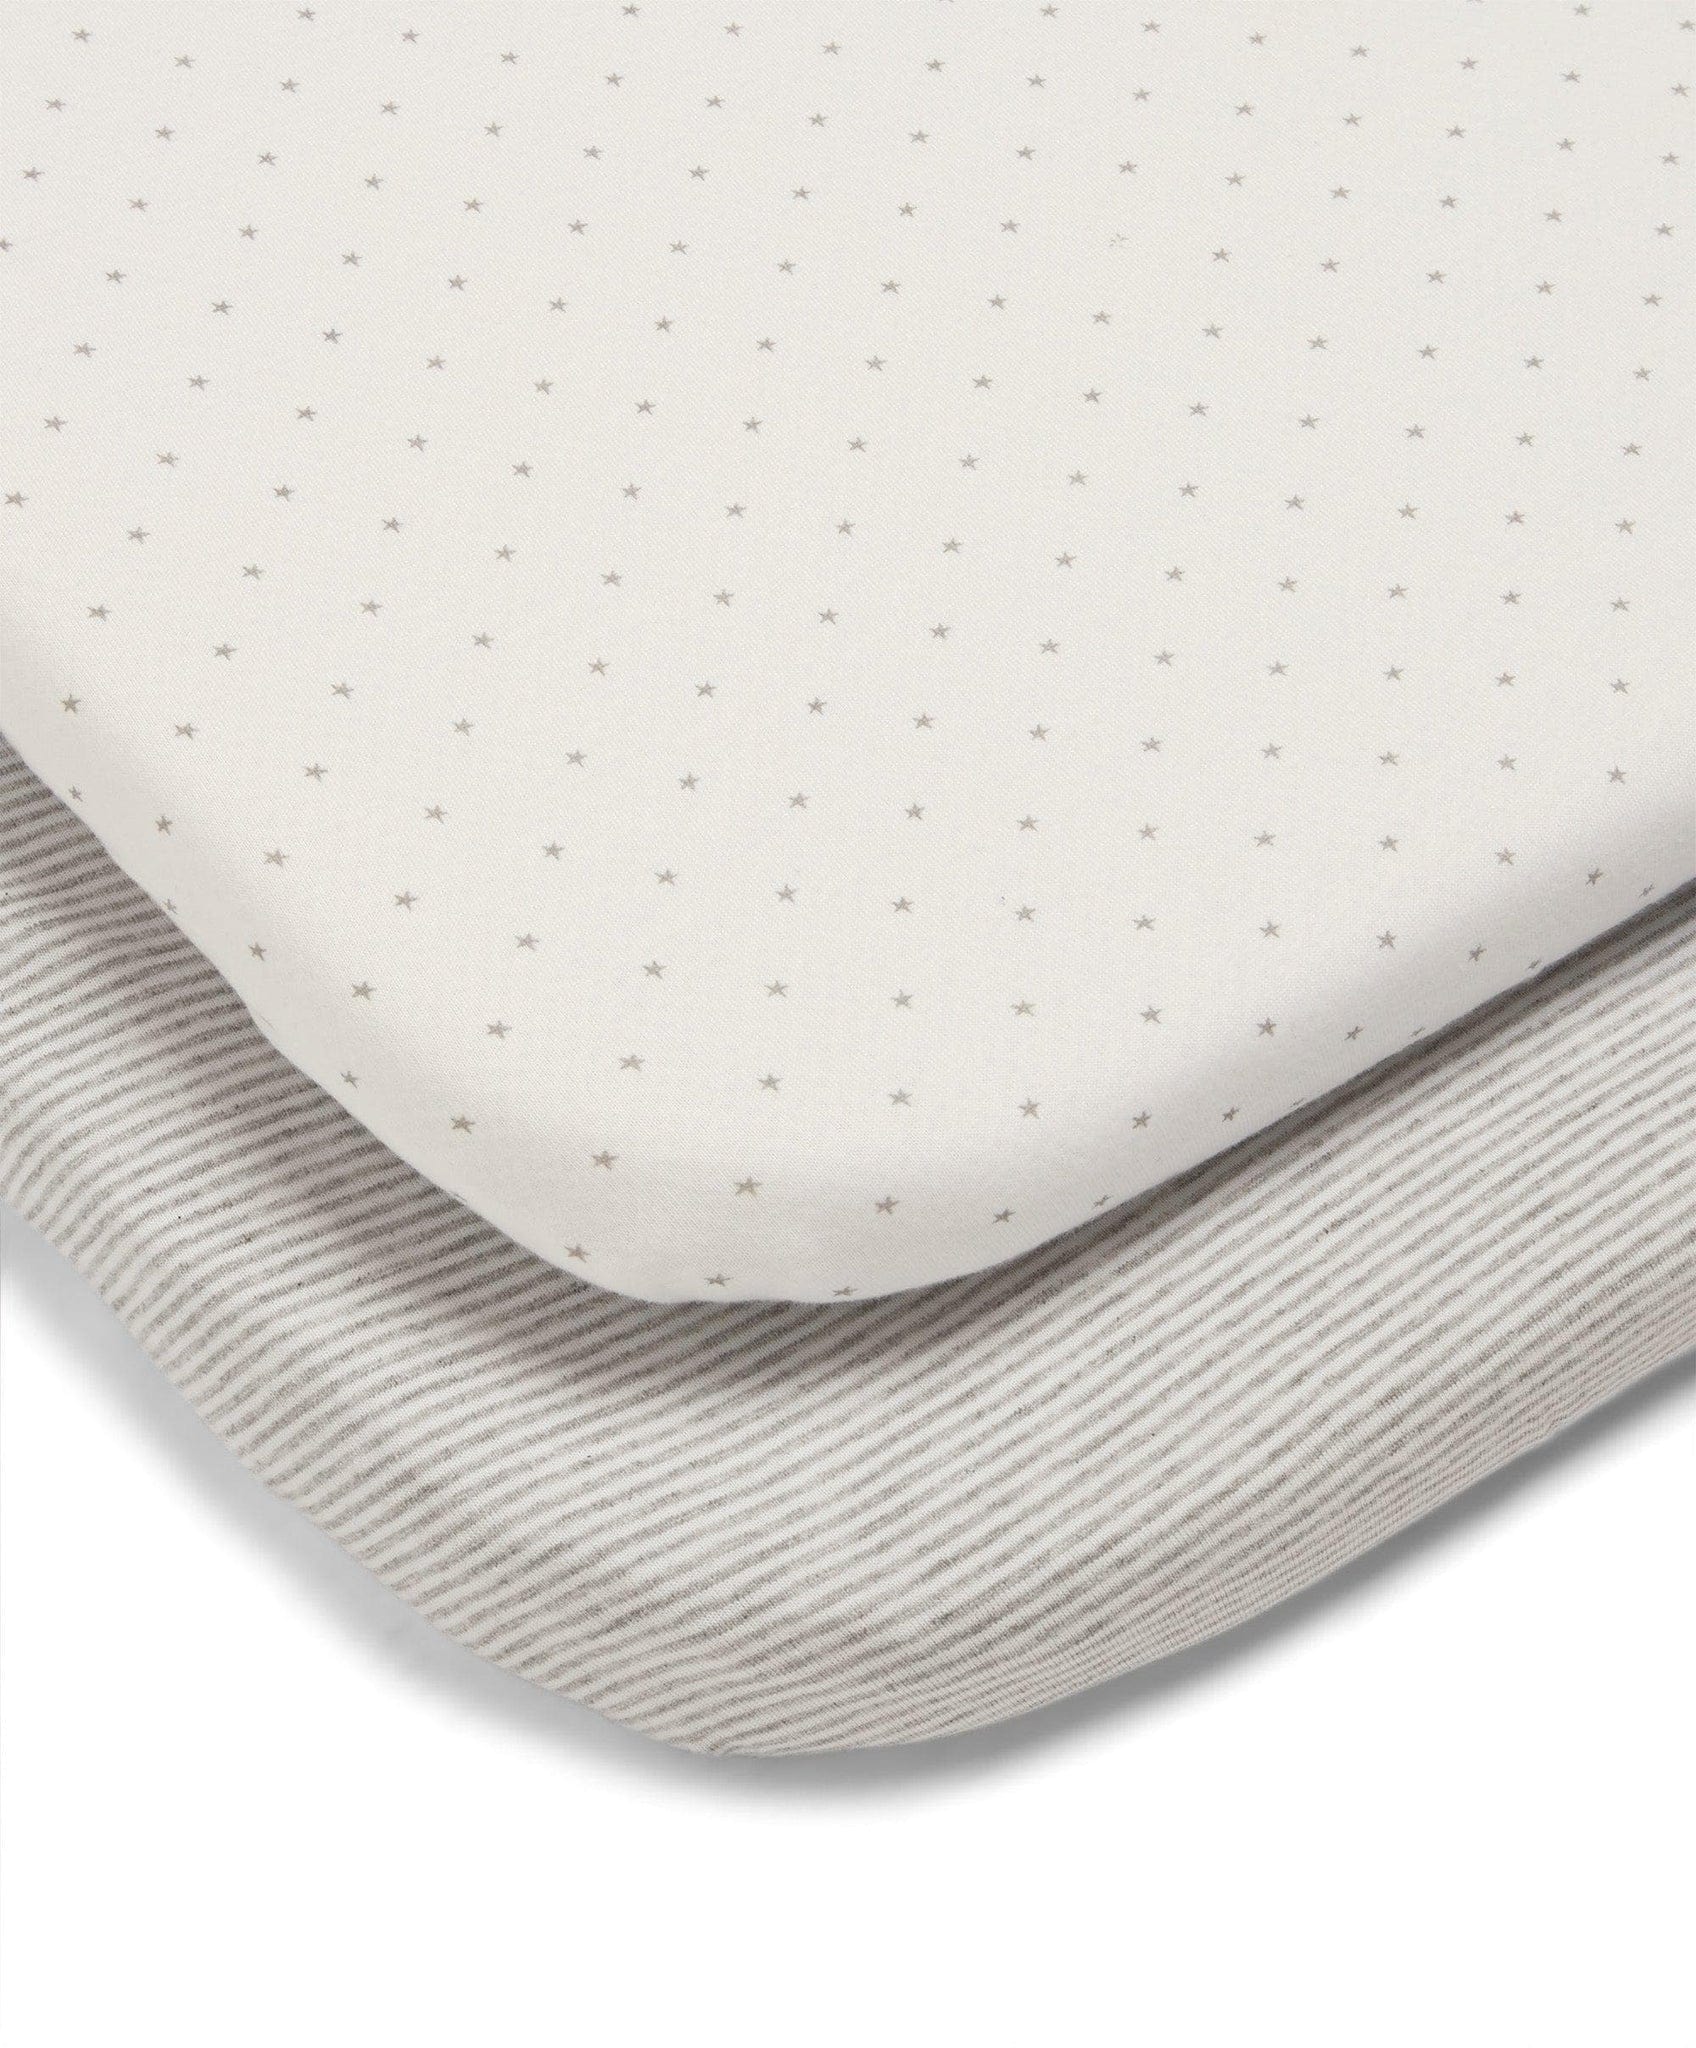 Mamas & Papas cot bed sheets Mamas & Papas 2 Universal Crib Fitted Sheets - Grey Star 7781S4201